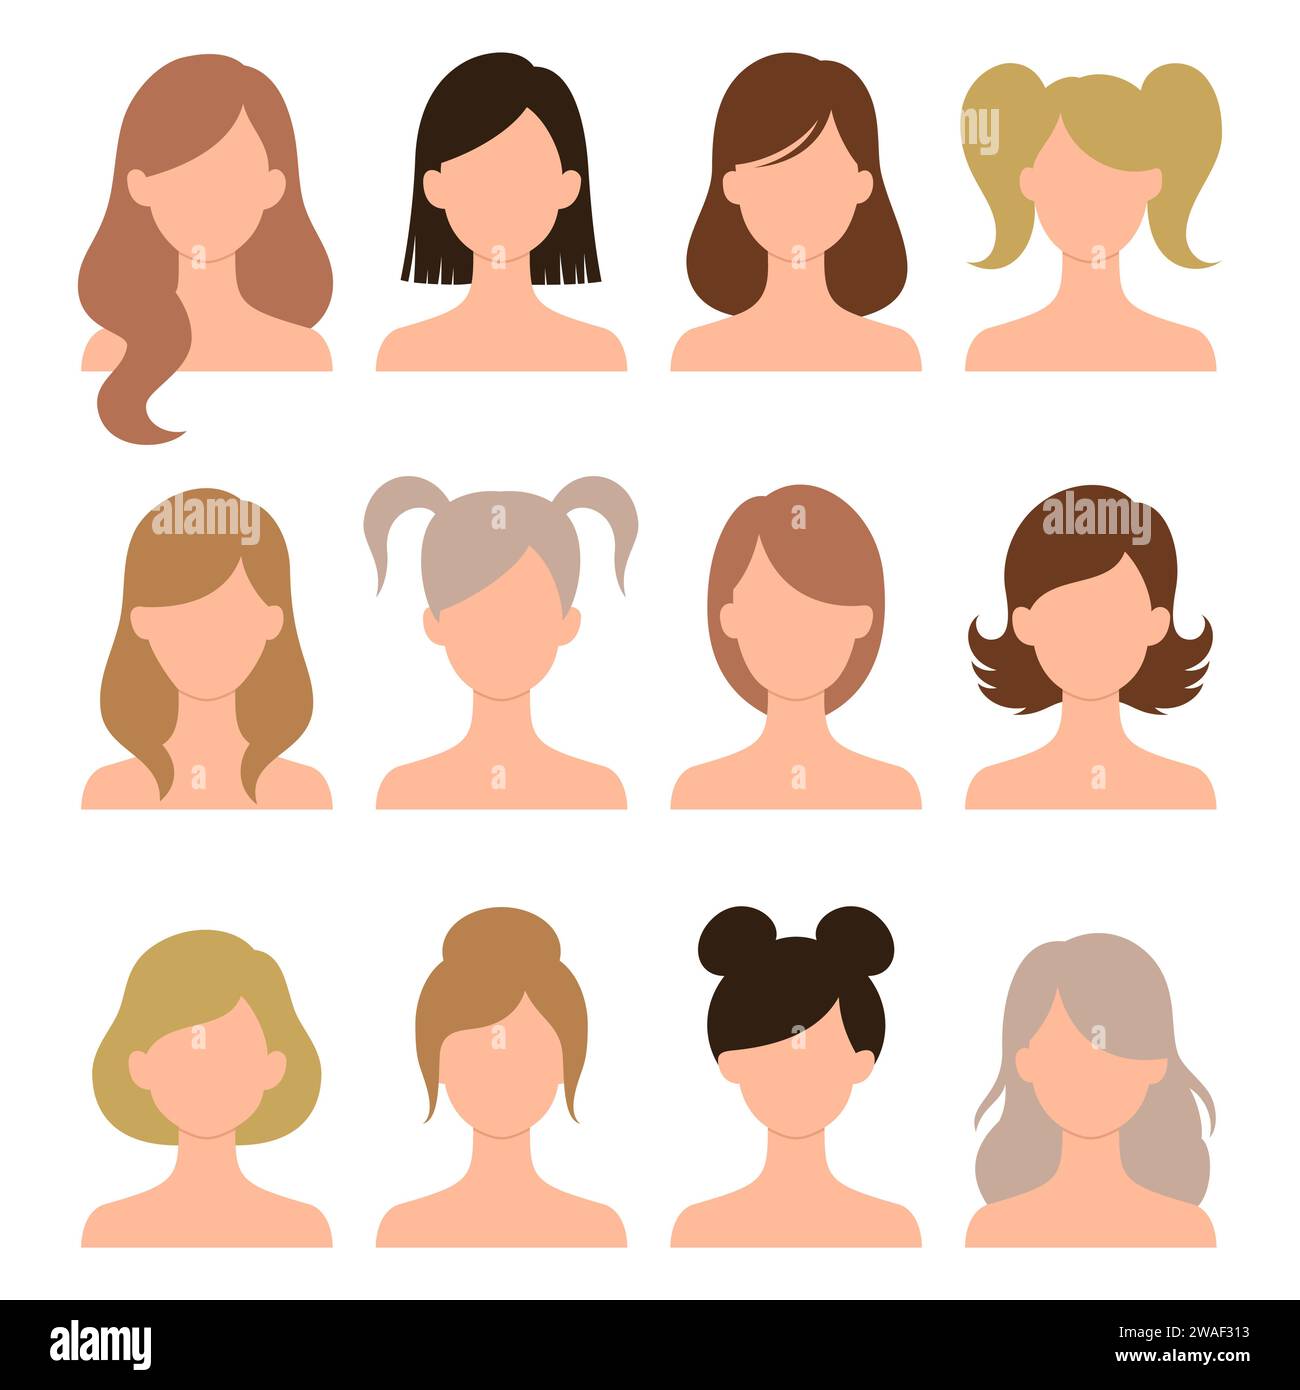 Hairstyle-Set für Damen. Frauenkopf mit Haarschnitten, Pferdeschwanz und Brötchen. Verschiedene Frisuren und Symbole in verschiedenen Farben. Vektorabbildung Stock Vektor